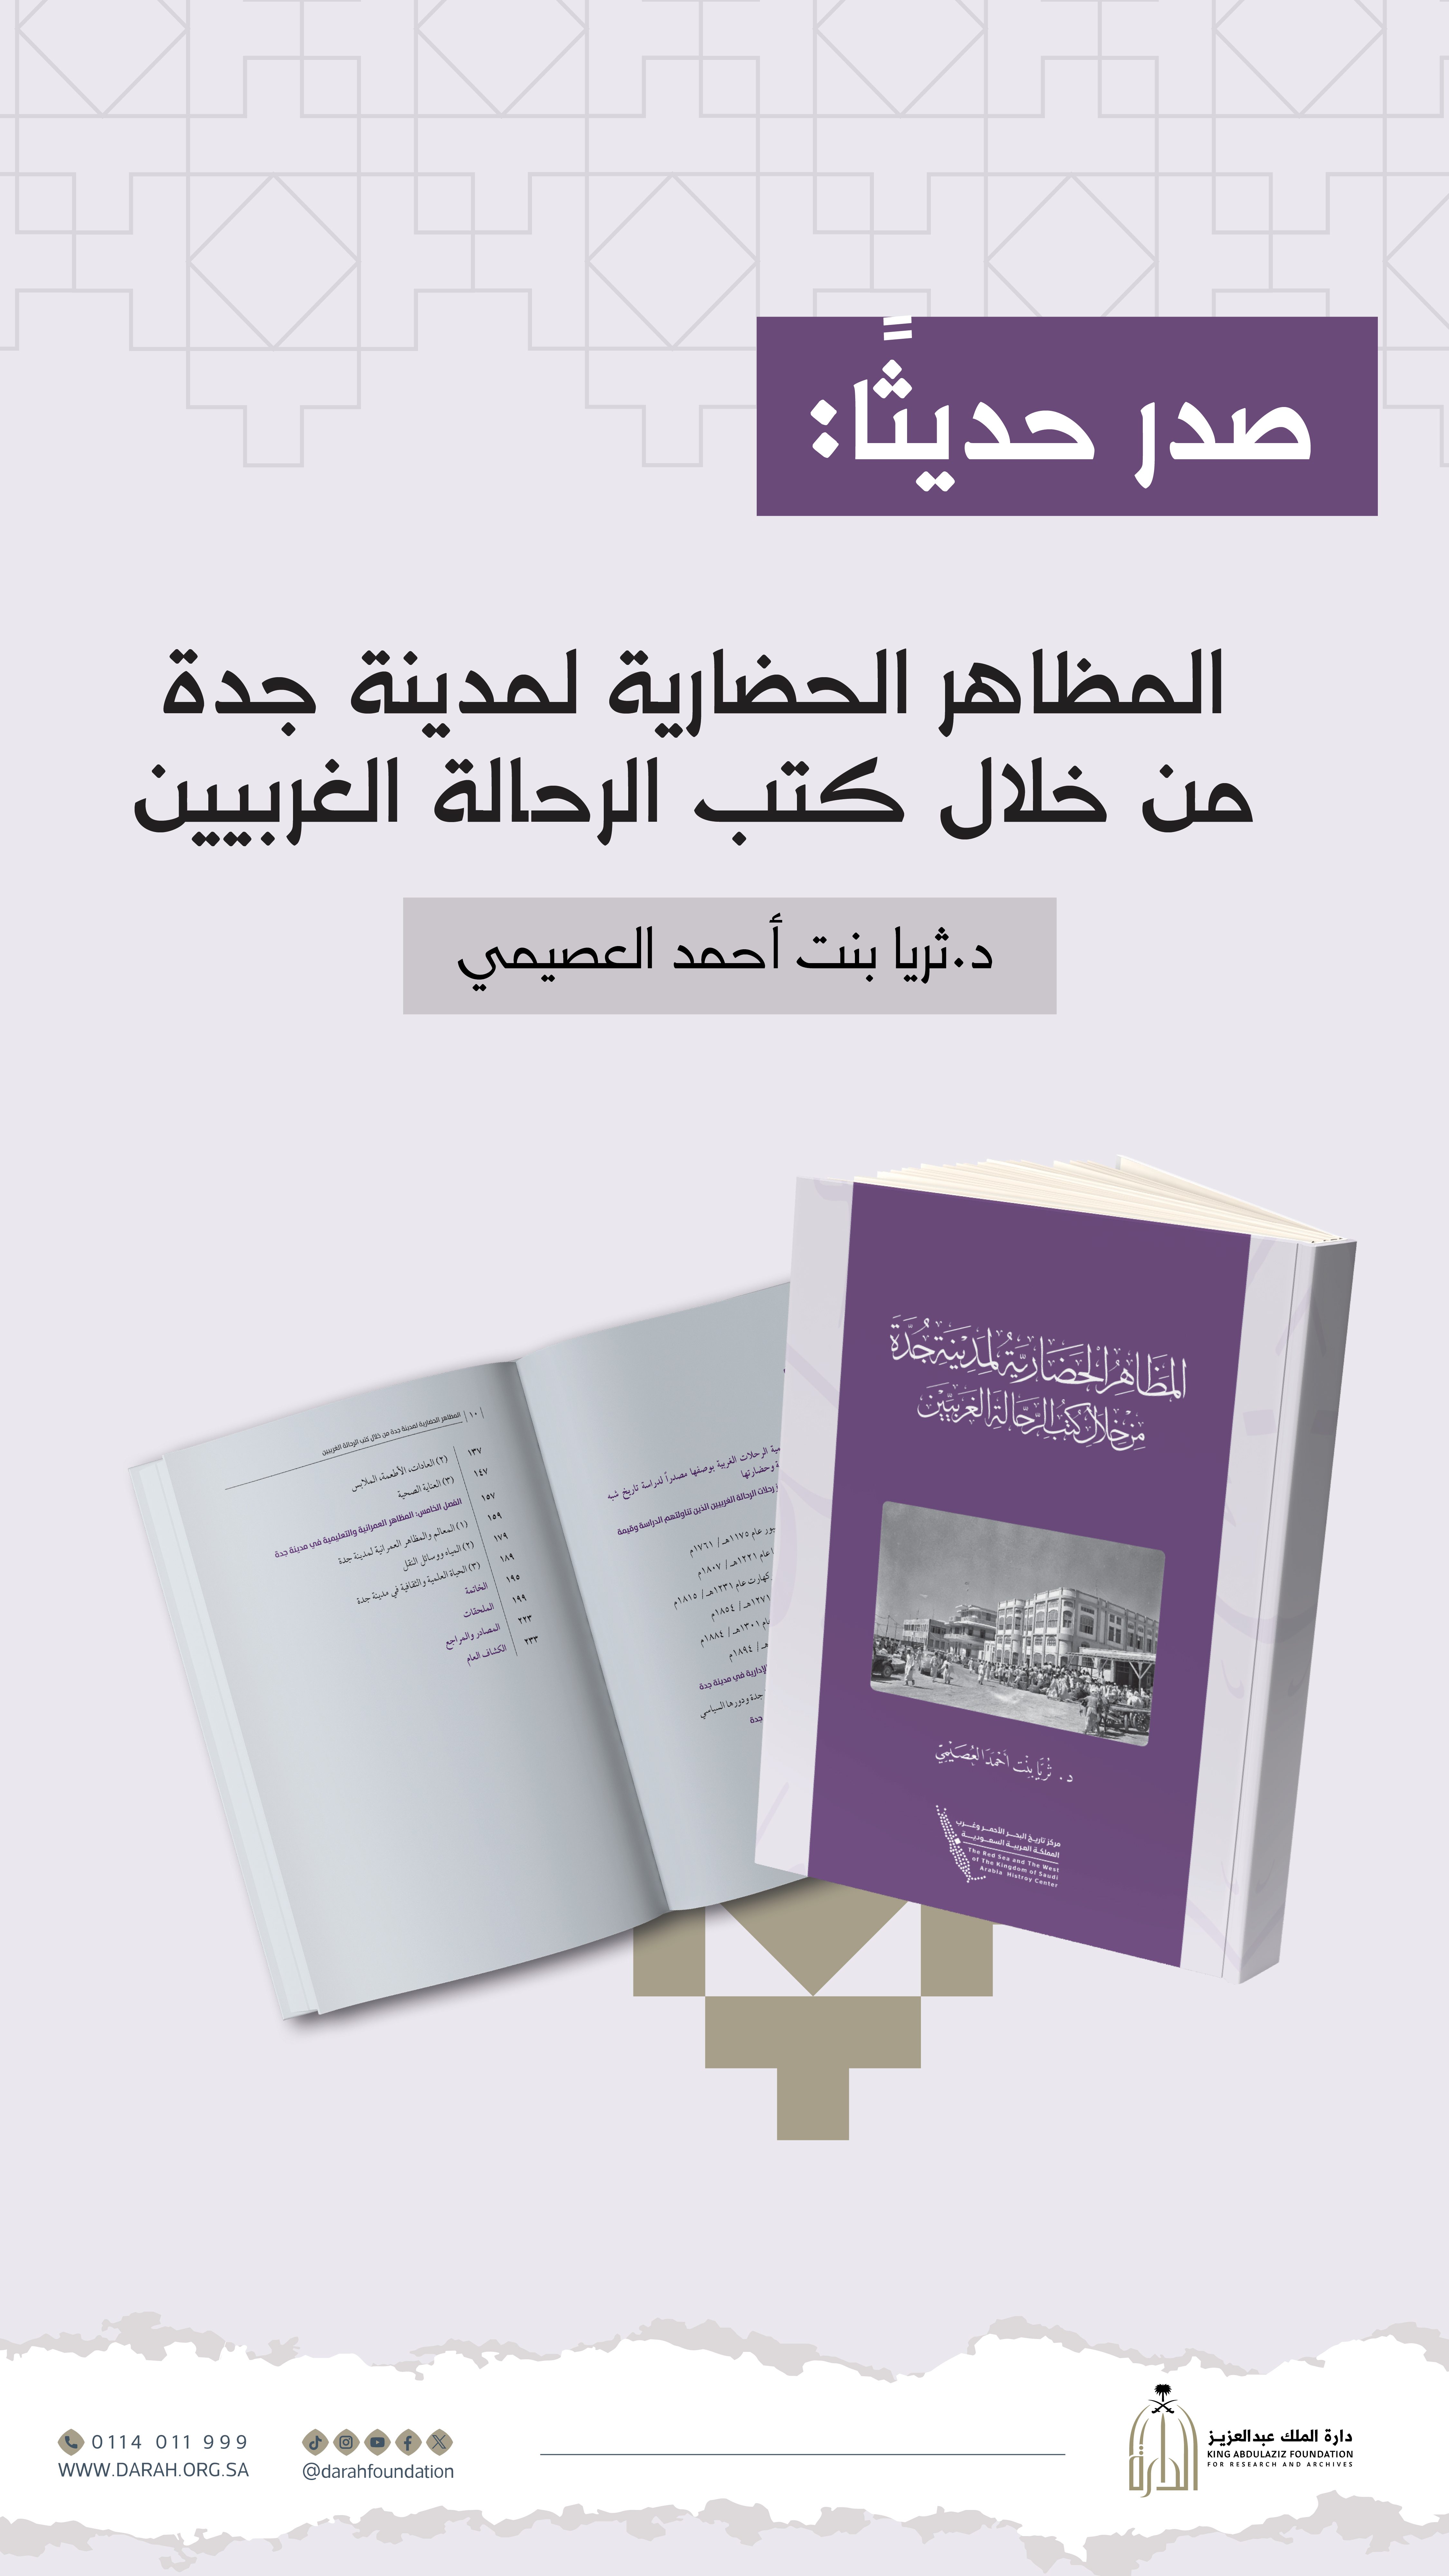 إصدار للدارة يستشف المظاهر الحضارية لمدينة جدة من خلال كتب الرحالة الغربيين